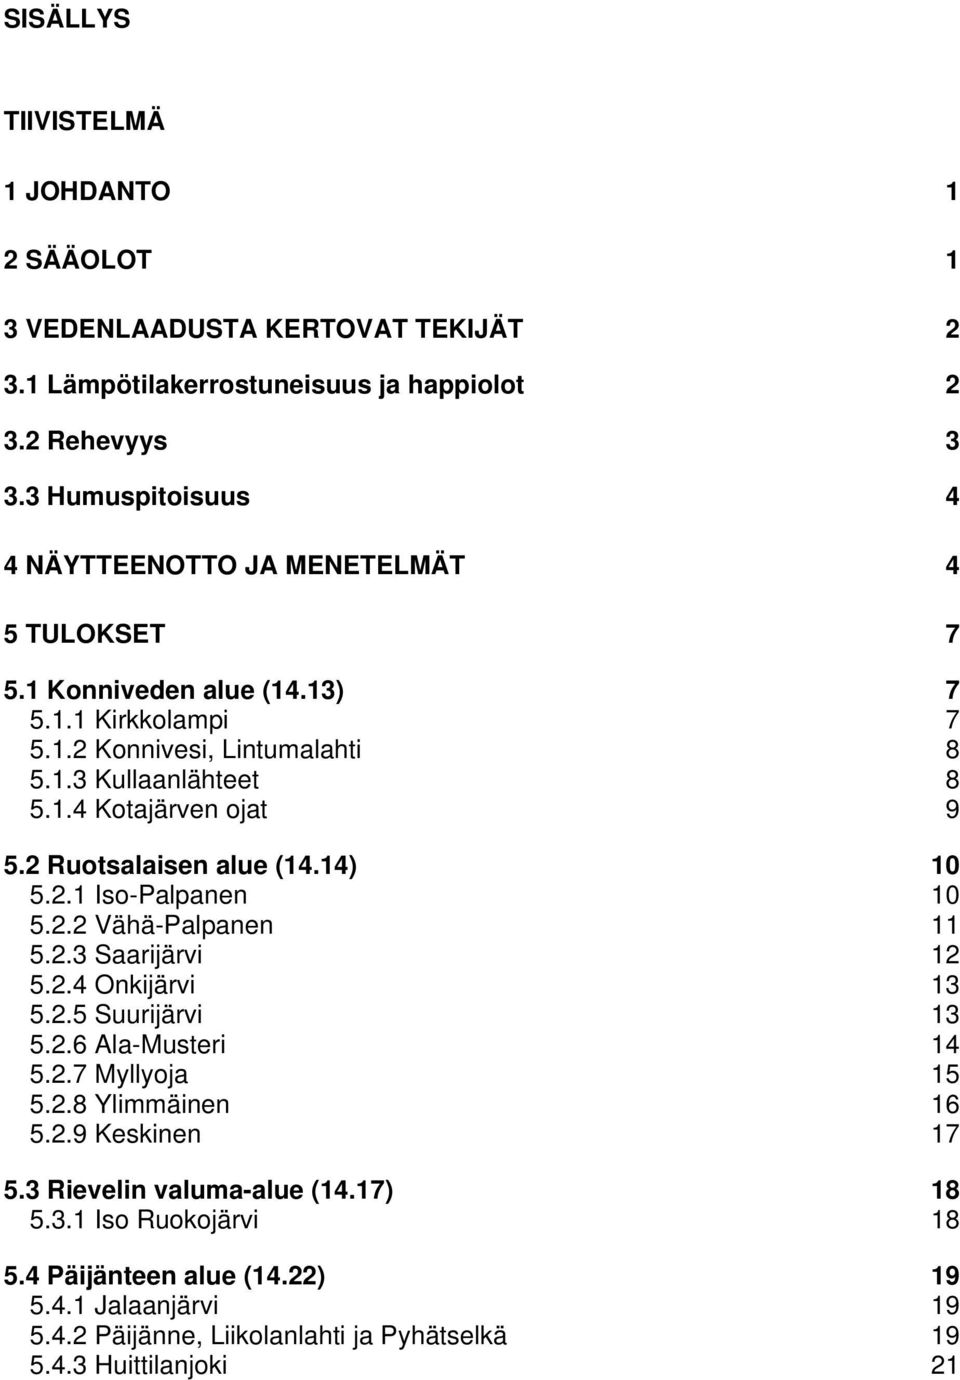 2 Ruotsalaisen alue (14.14) 10 5.2.1 Iso-Palpanen 10 5.2.2 Vähä-Palpanen 11 5.2.3 Saarijärvi 12 5.2.4 Onkijärvi 13 5.2.5 Suurijärvi 13 5.2.6 Ala-Musteri 14 5.2.7 Myllyoja 15 5.2.8 Ylimmäinen 16 5.